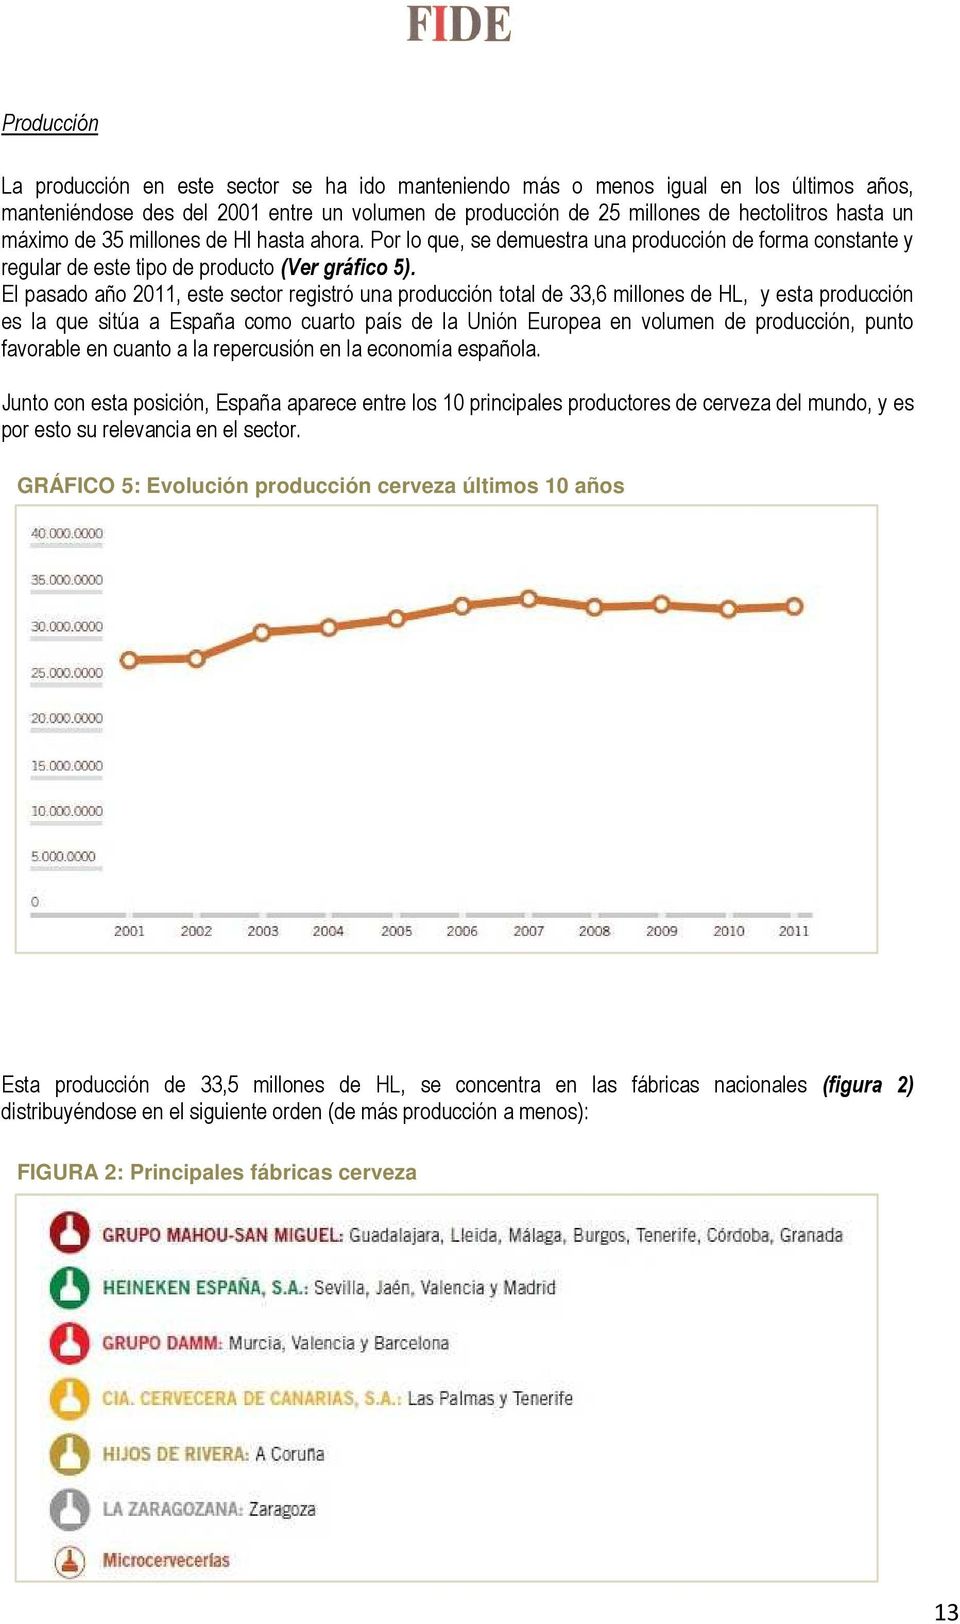 El pasado año 2011, este sector registró una producción total de 33,6 millones de HL, y esta producción es la que sitúa a España como cuarto país de la Unión Europea en volumen de producción, punto